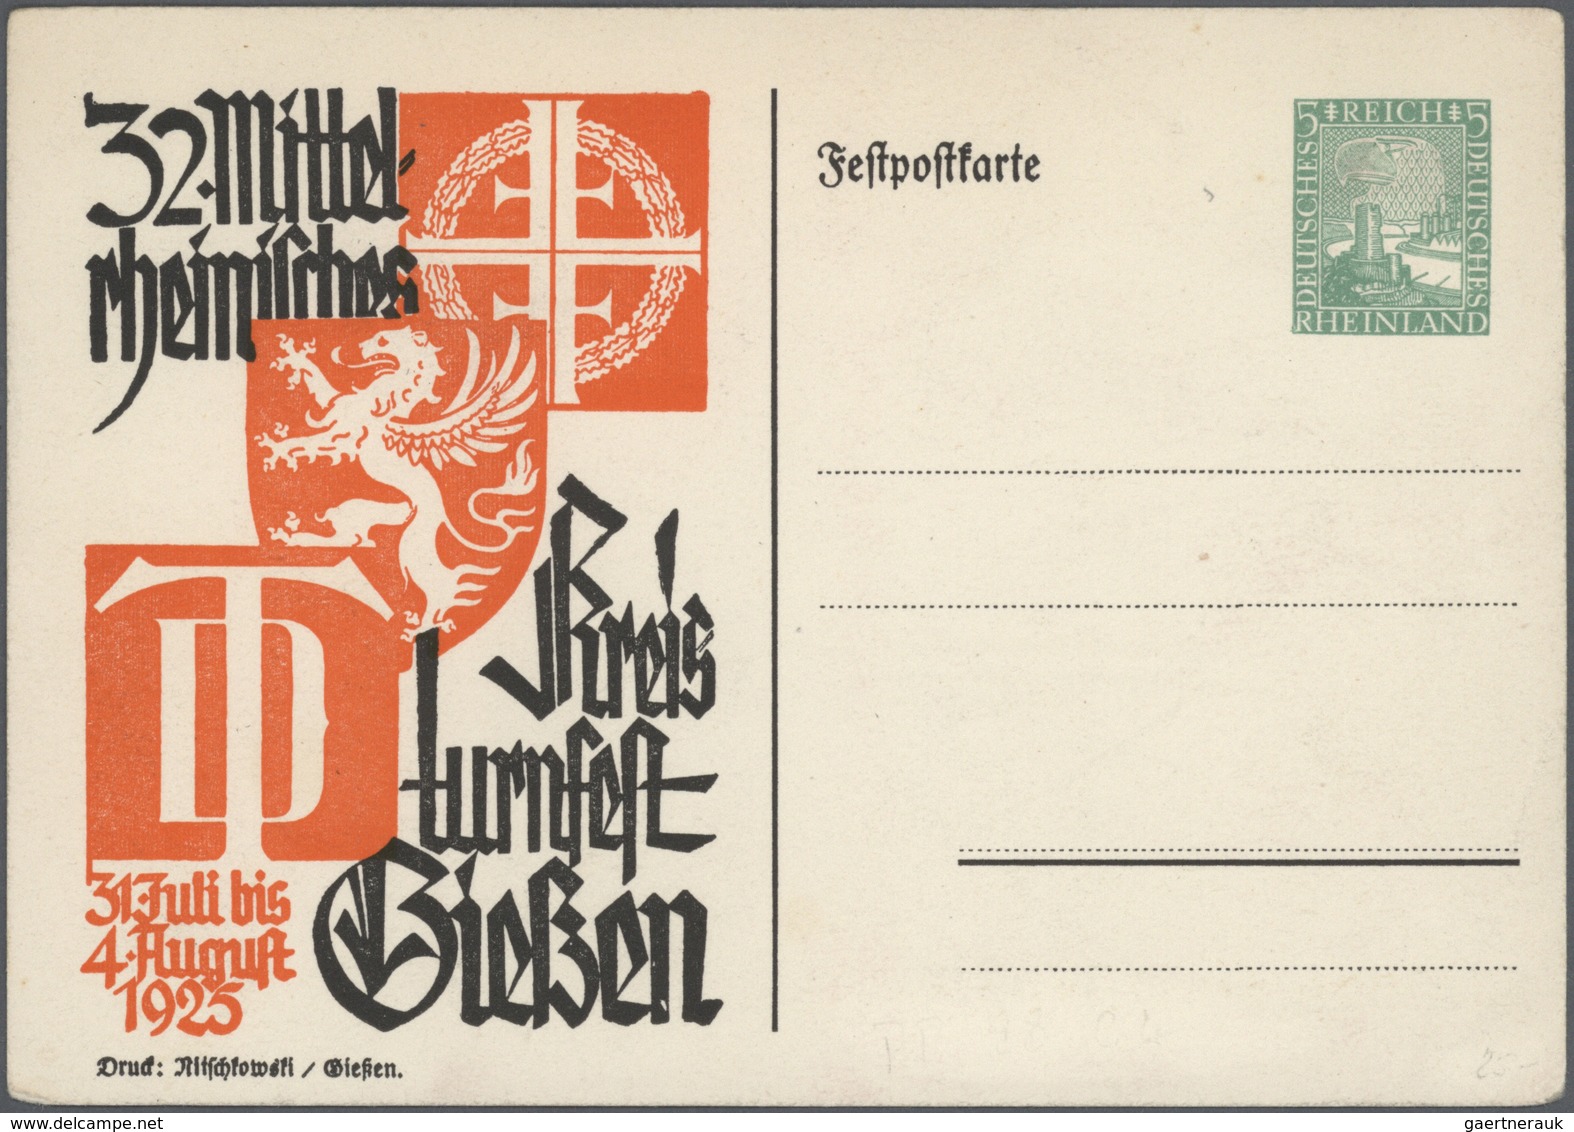 31794 Deutsches Reich - Privatganzsachen: 1910/1932, umfangreiche Sammlung "Privatganzsachenkarten" mit ca